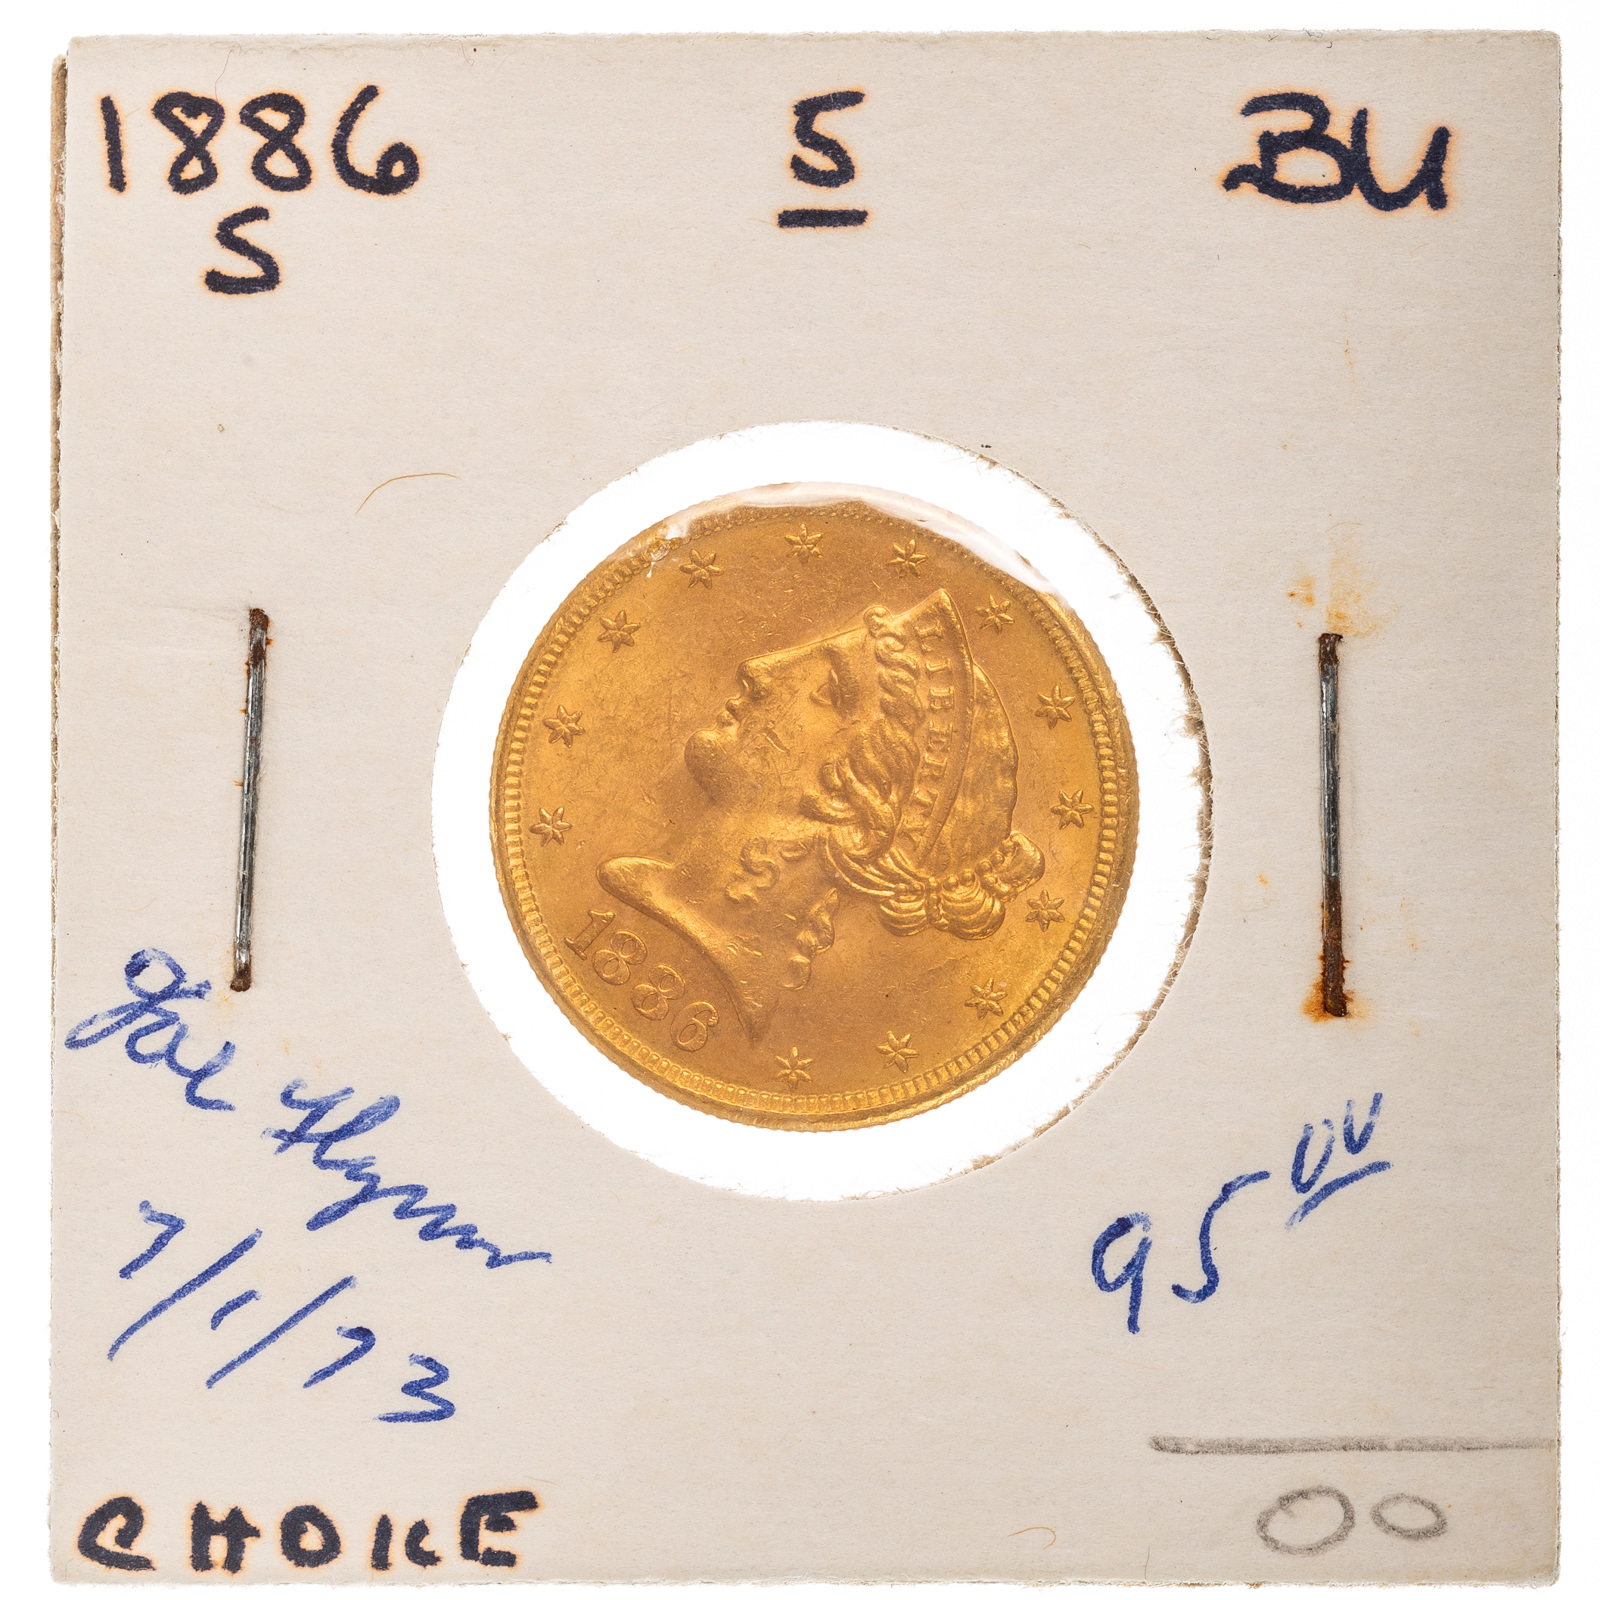 1886 S 5 LIBERTY GOLD HALF EAGLE  3b27d6